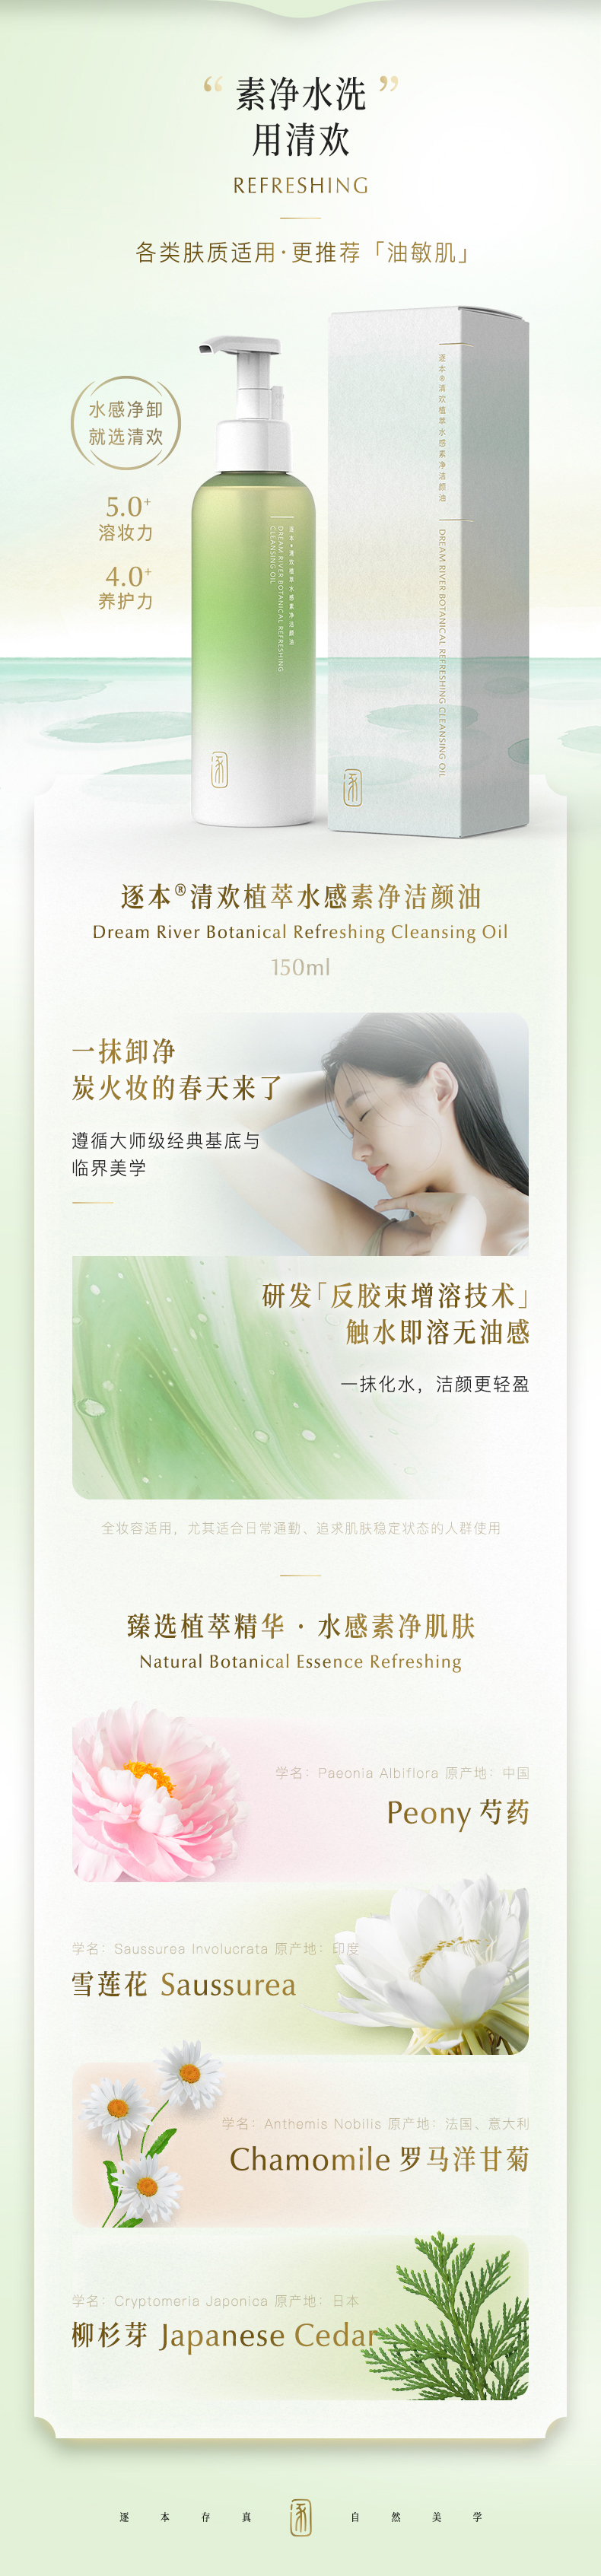 化妝品品牌策劃設計-逐本卸妝油-杭州品牌策劃設計公司